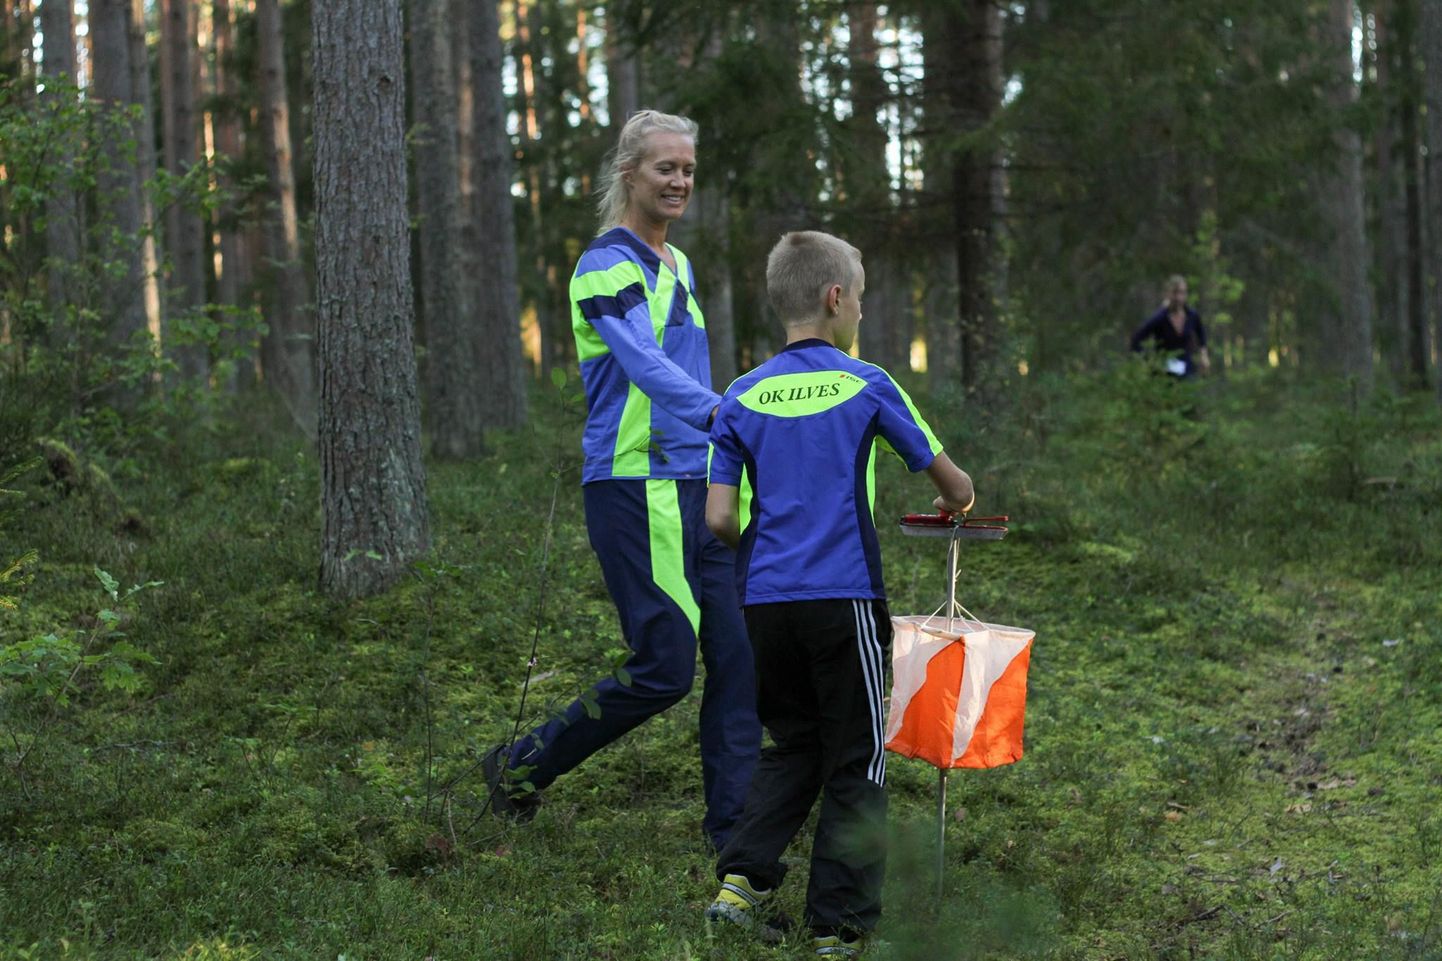 Eelmisel aastal osales Tartu orinteerumisneljapäevakutel 250-300 inimest etapi kohta. Korraldajad, Ilvese orienteerumisklubi noored loodavad, et tänavu leiab neljapäevakutele tee veelgi suurem rahvahulk.